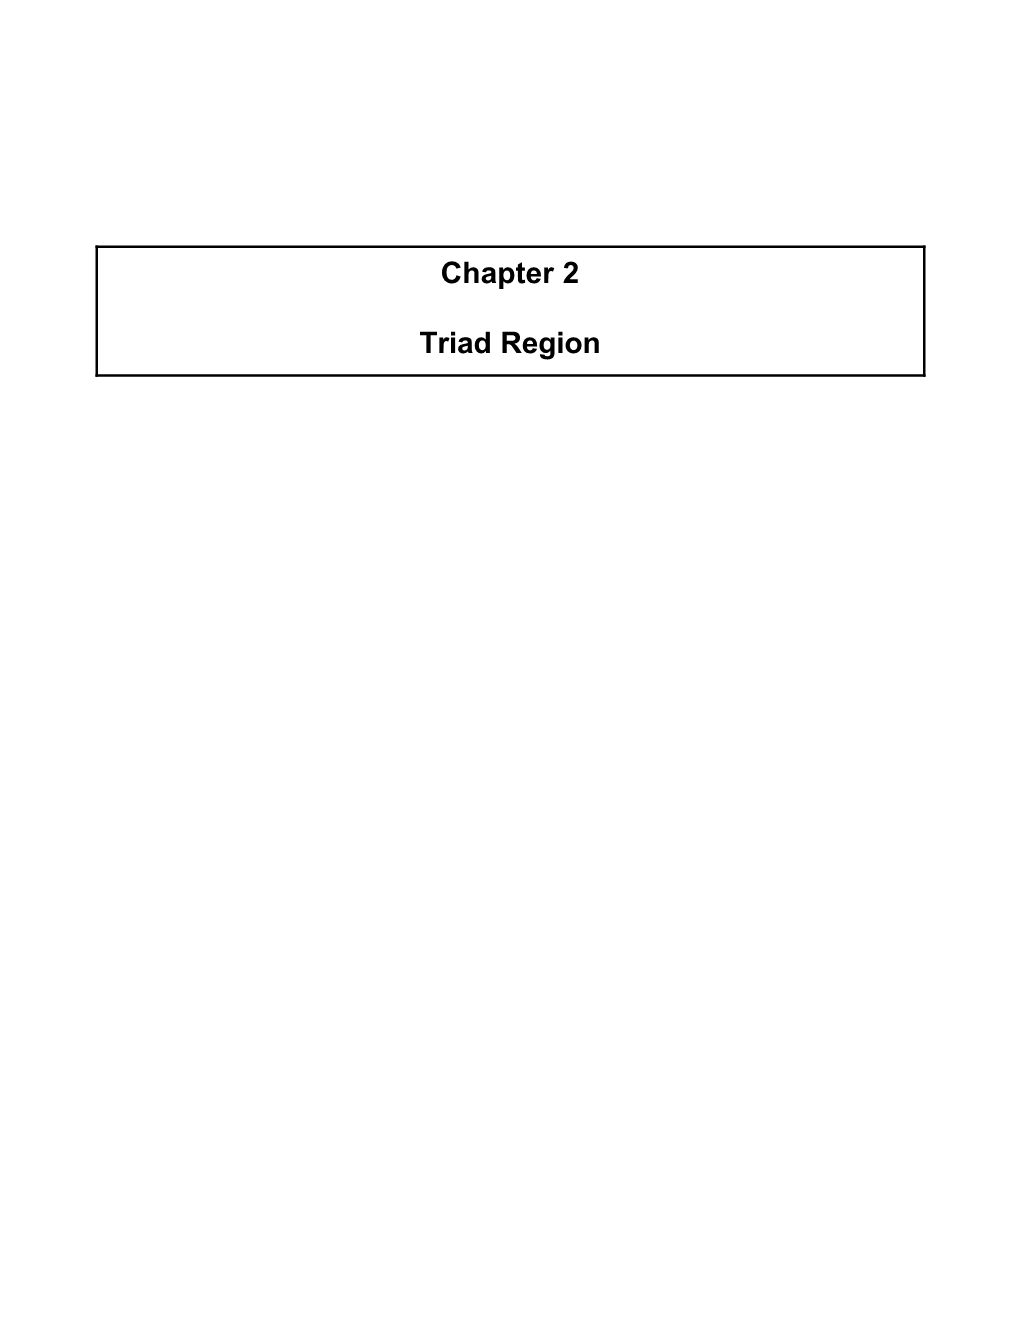 Chapter 2 Triad Region